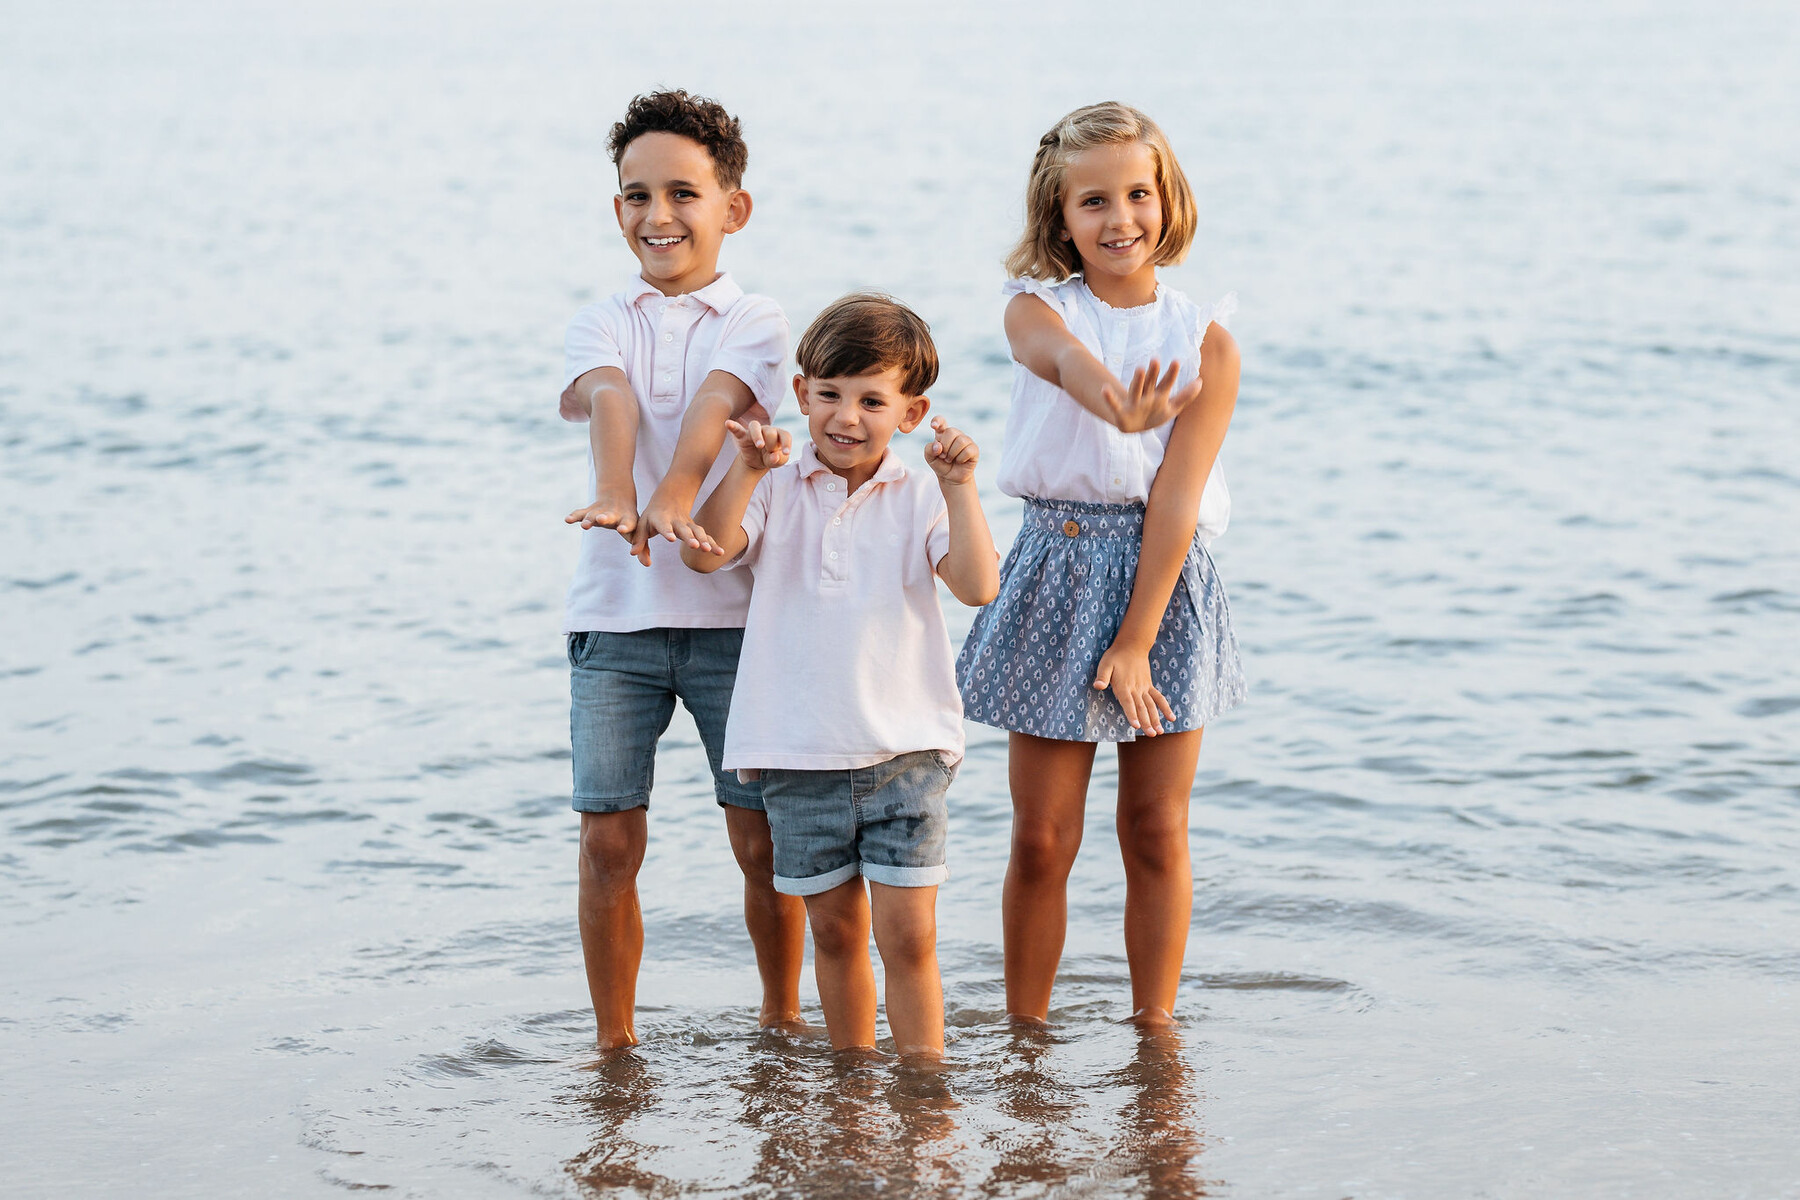 Family photo shoot on the beach in Marbella, Malaga